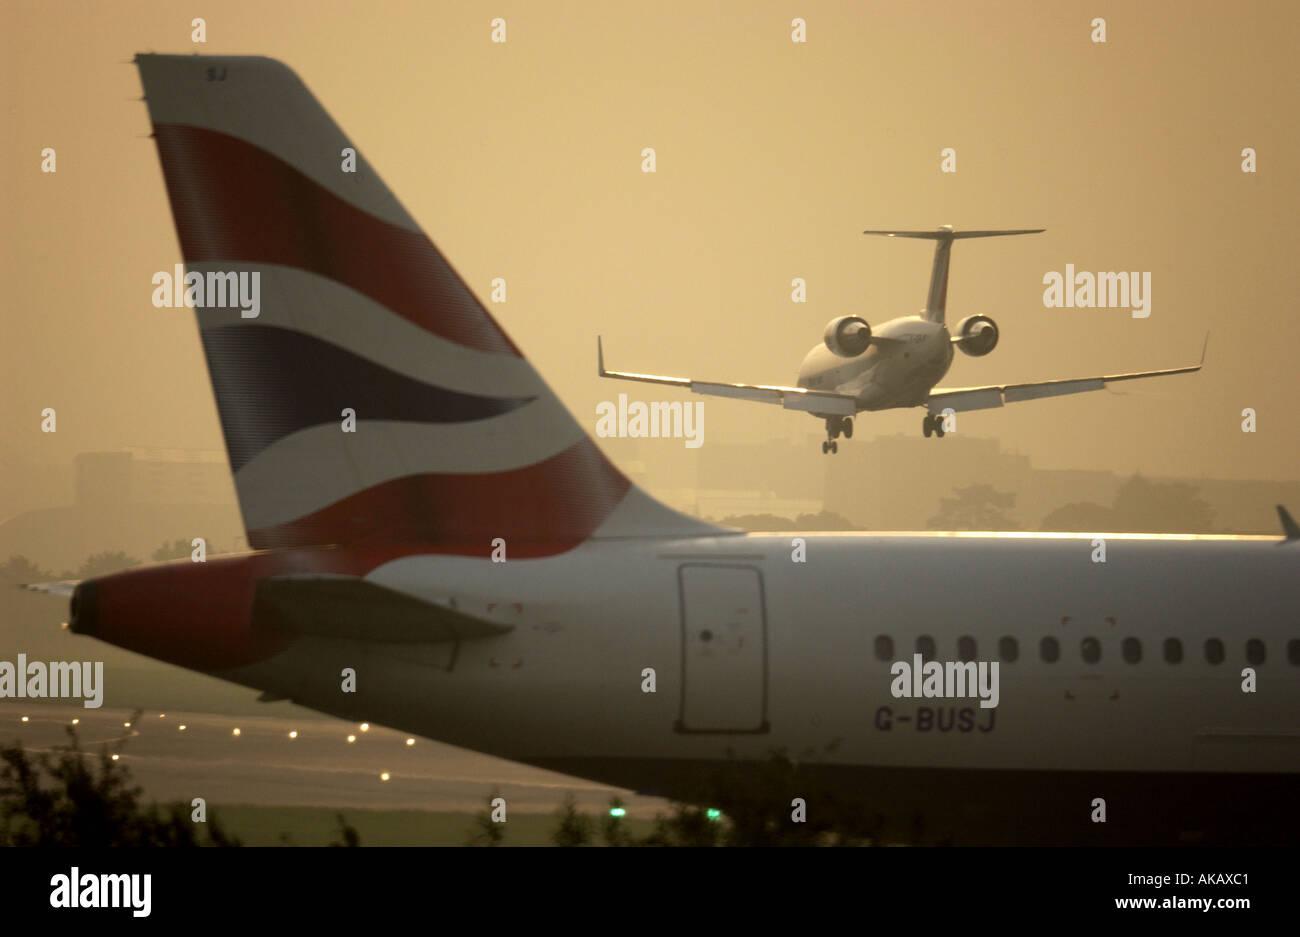 Un Air France BritAir Jet entra in terra all'alba sopra la coda di un British Airways Jet in attesa di prendere il via a Londra Gatwick Foto Stock